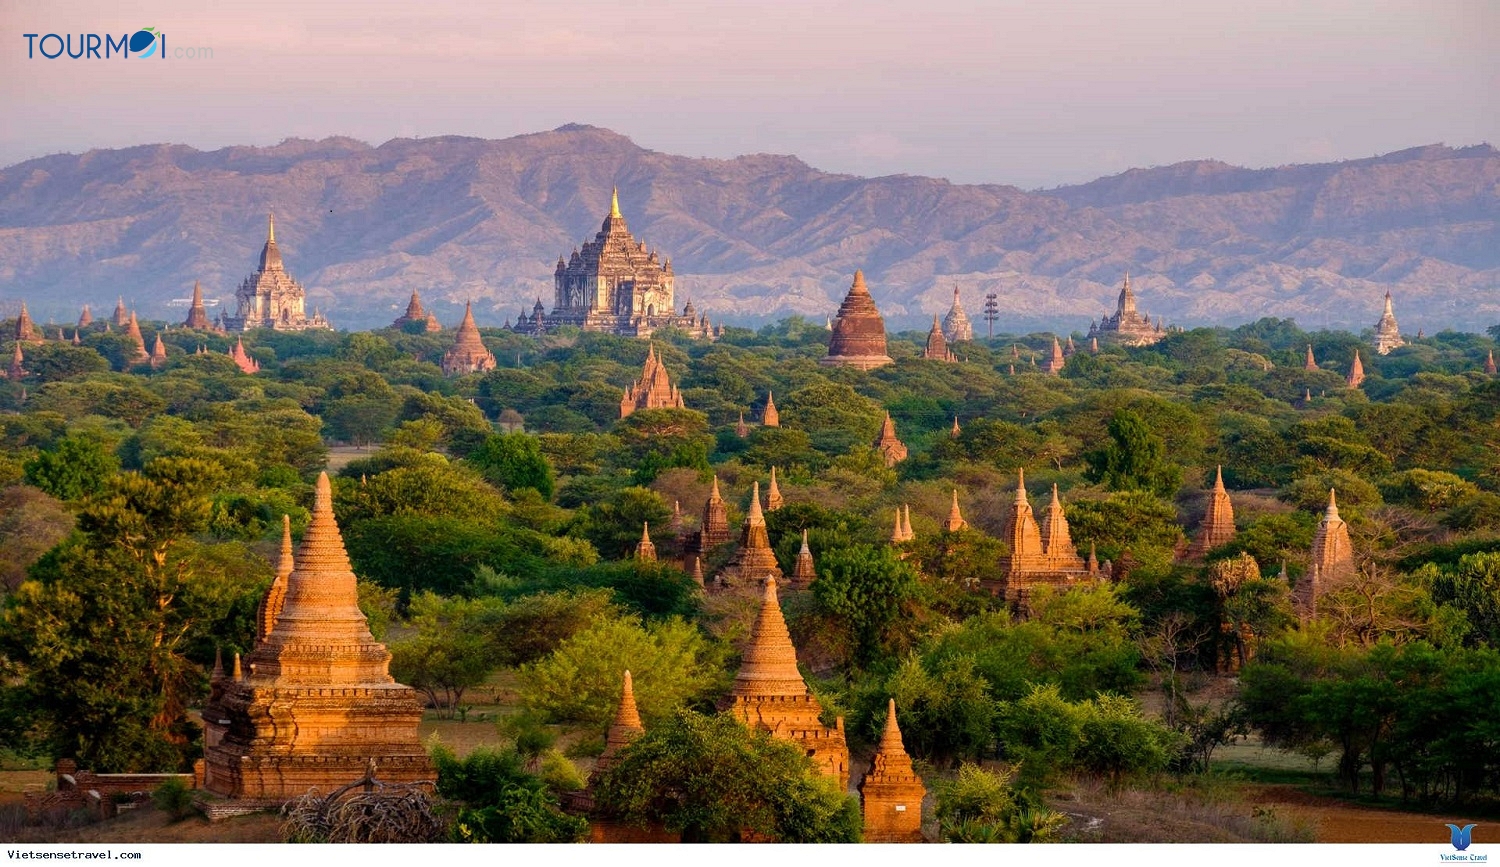 Tour Du lịch Hành Hương Myanmar - Yangon - Bagan 4 Ngày